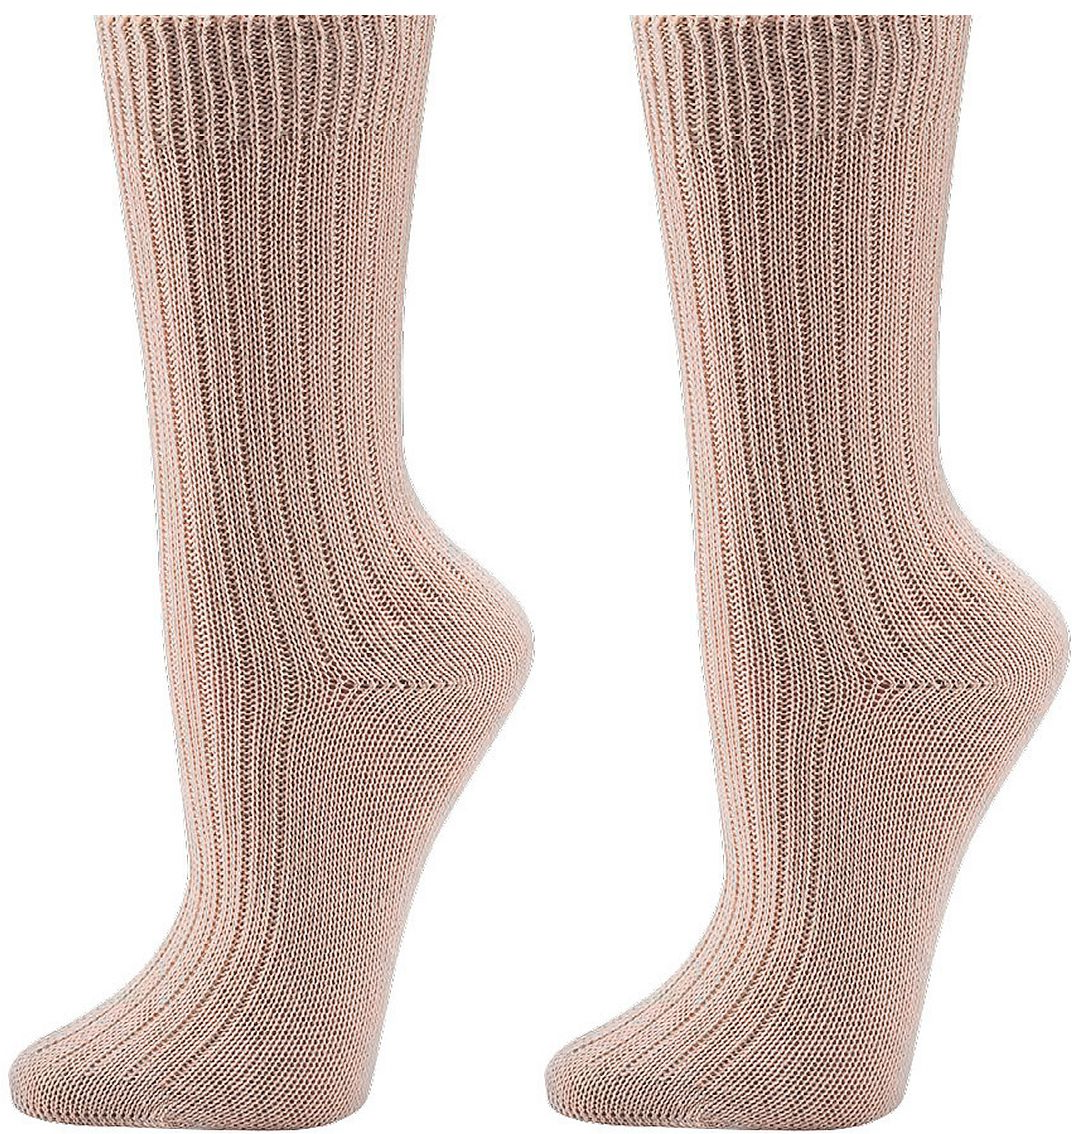 100 %  Bio Baumwolle Socken   Dicke Qualität   3 Paar